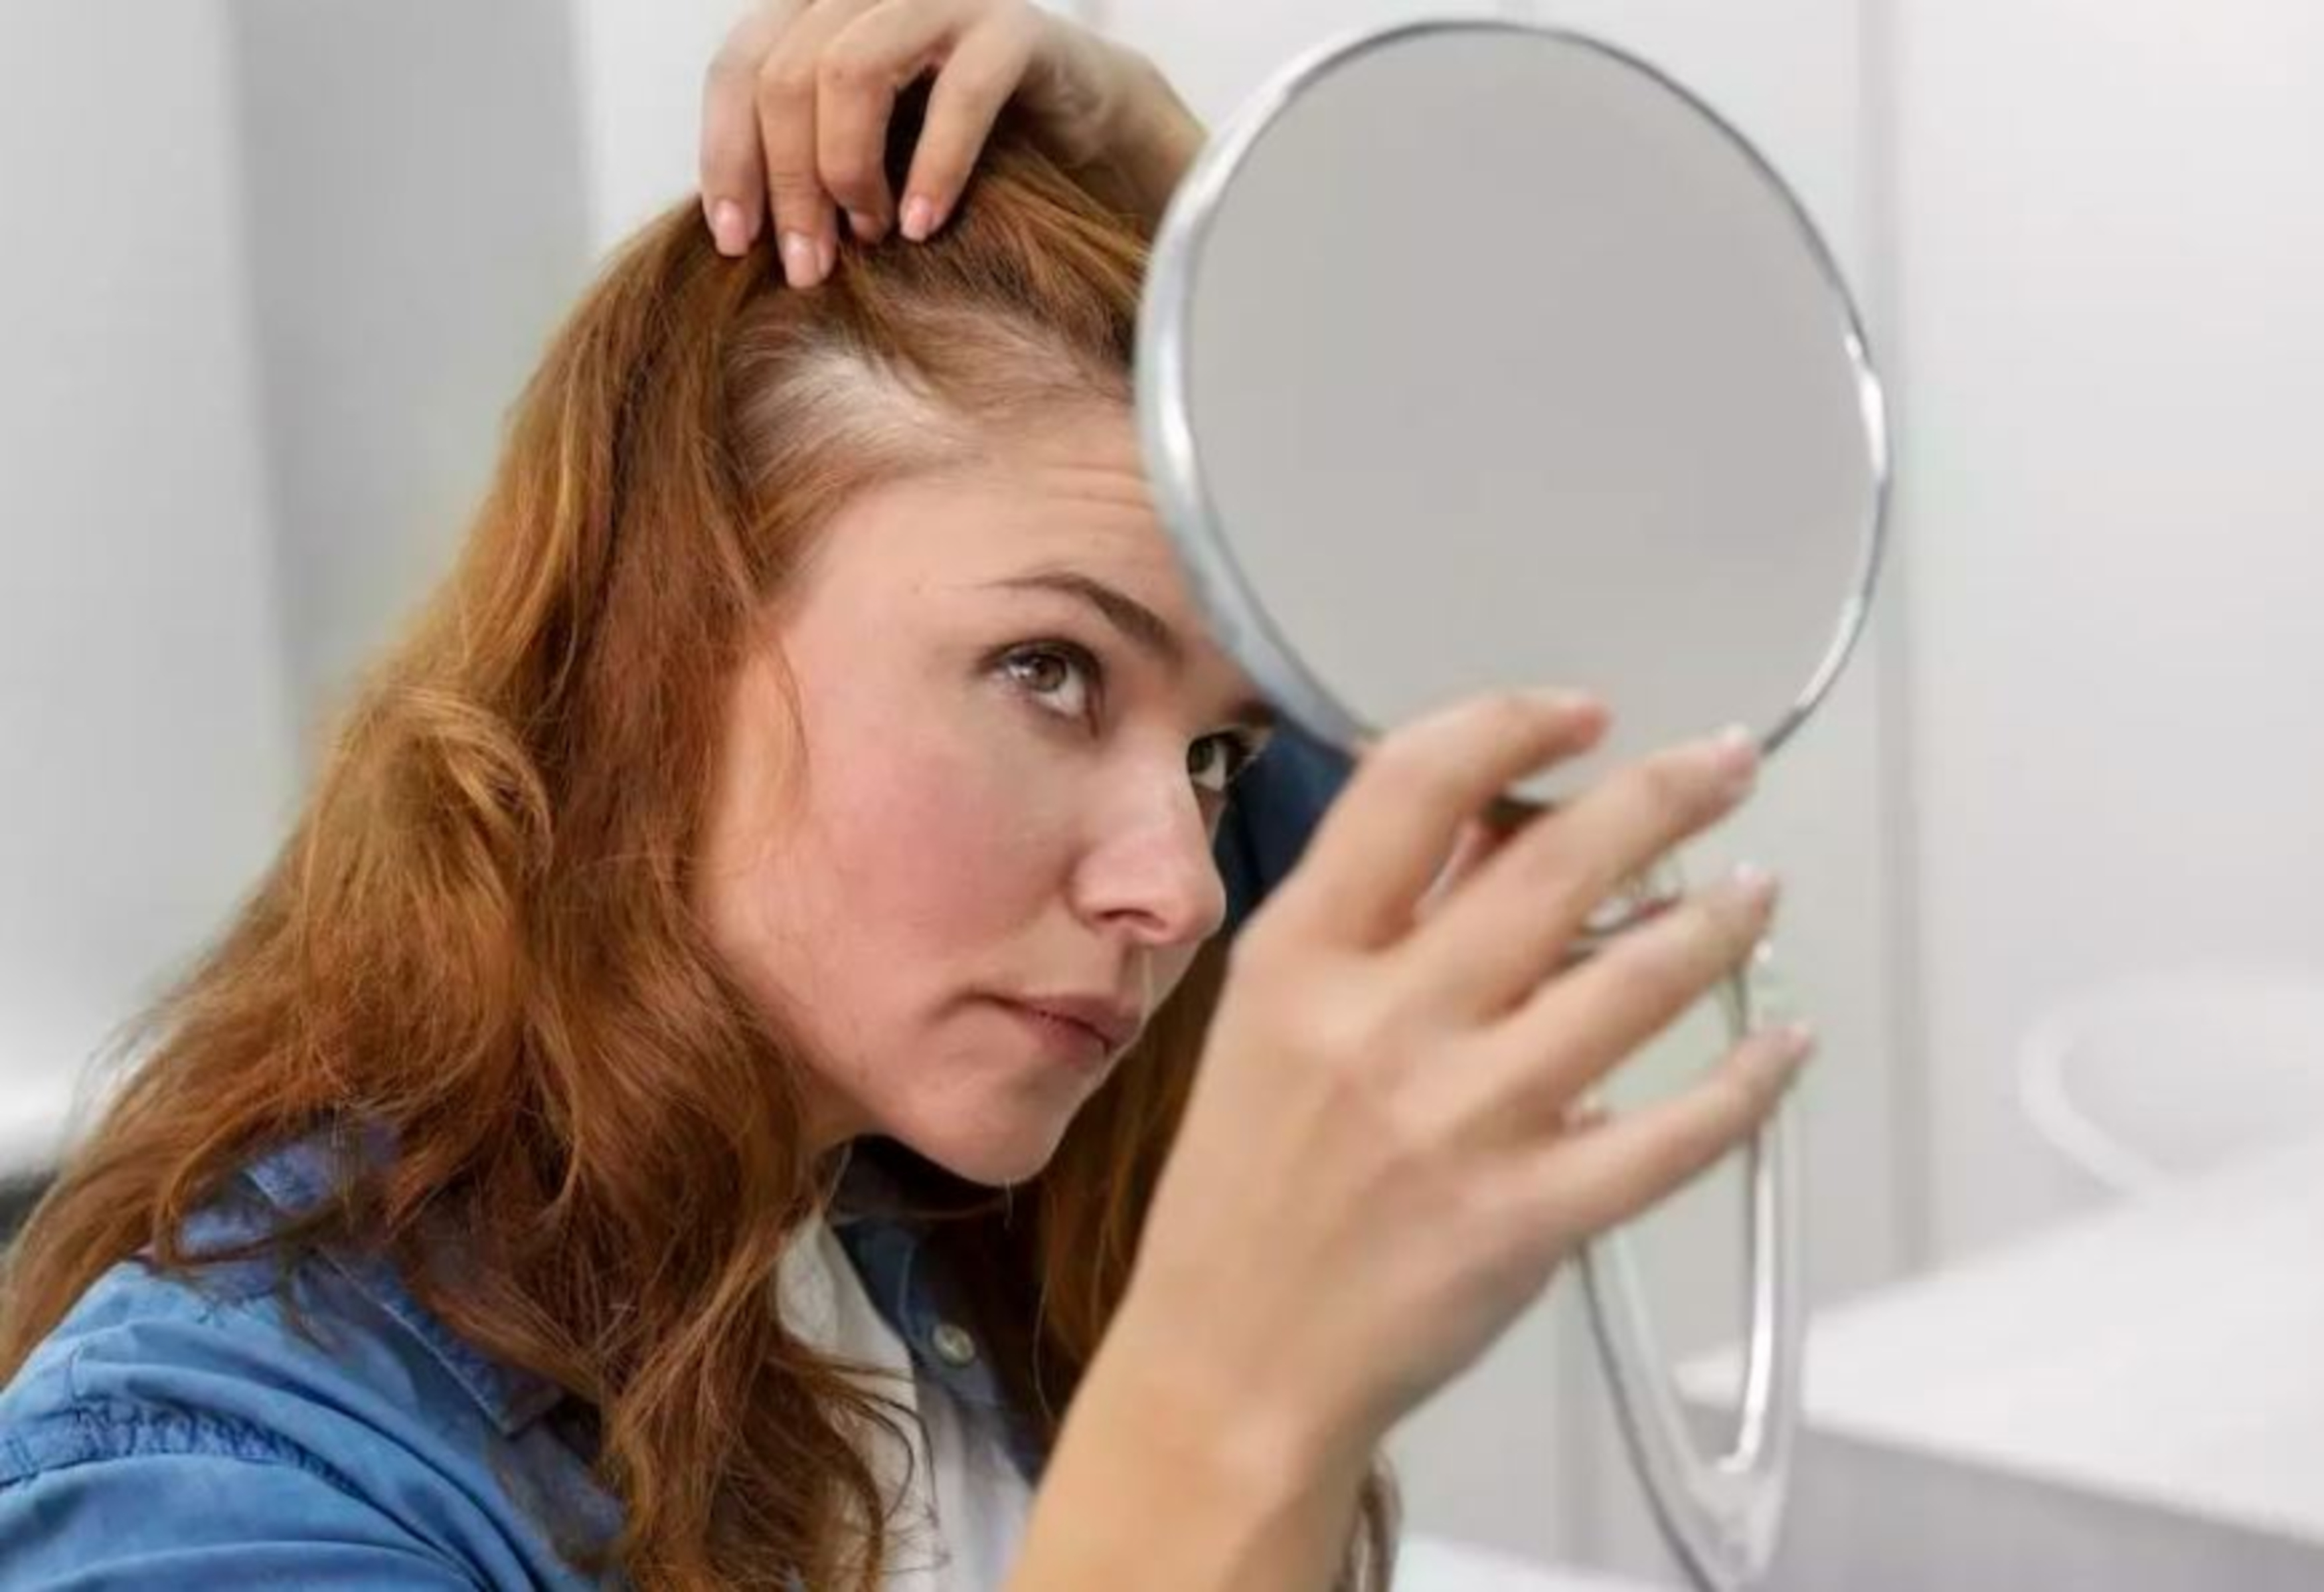 Cấy tóc nữ: Nhanh chóng và không đau đớn, cấy tóc nữ là phương pháp cải thiện mái tóc của bạn hiệu quả nhất. Thưởng thức những hình ảnh trước và sau khi được cấy tóc và cảm nhận sự khác biệt ngay lập tức.